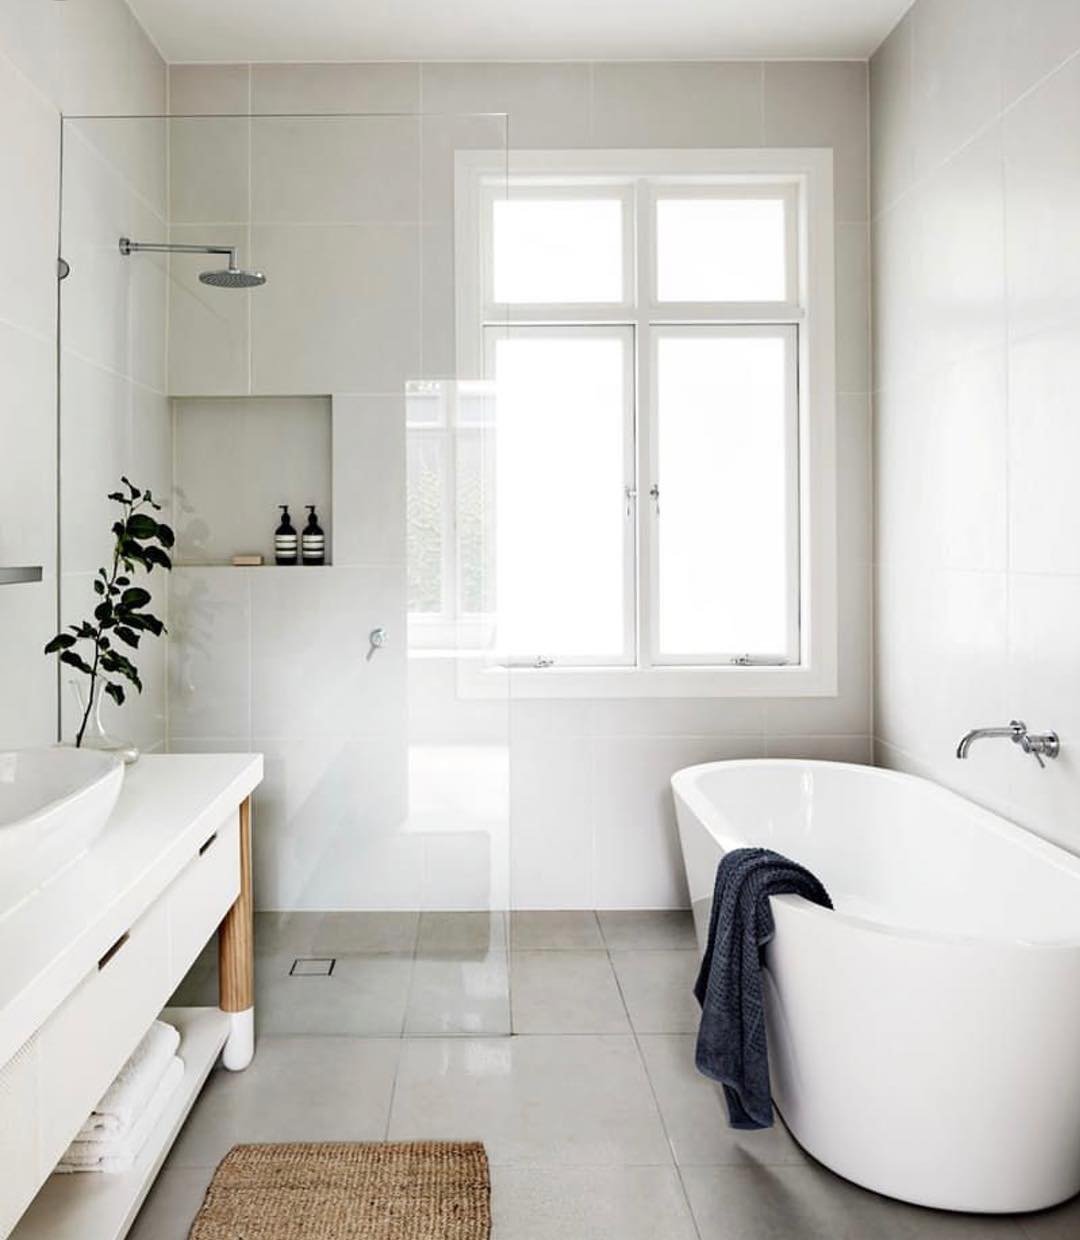 Idea piccolo bagno con vasca e doccia, stile scandinavo, luminoso e pulito. Spazio perfettamente studiato per la massima ergonomia. Pavimenti e rivestimenti in ceramica di grandi dimensioni.